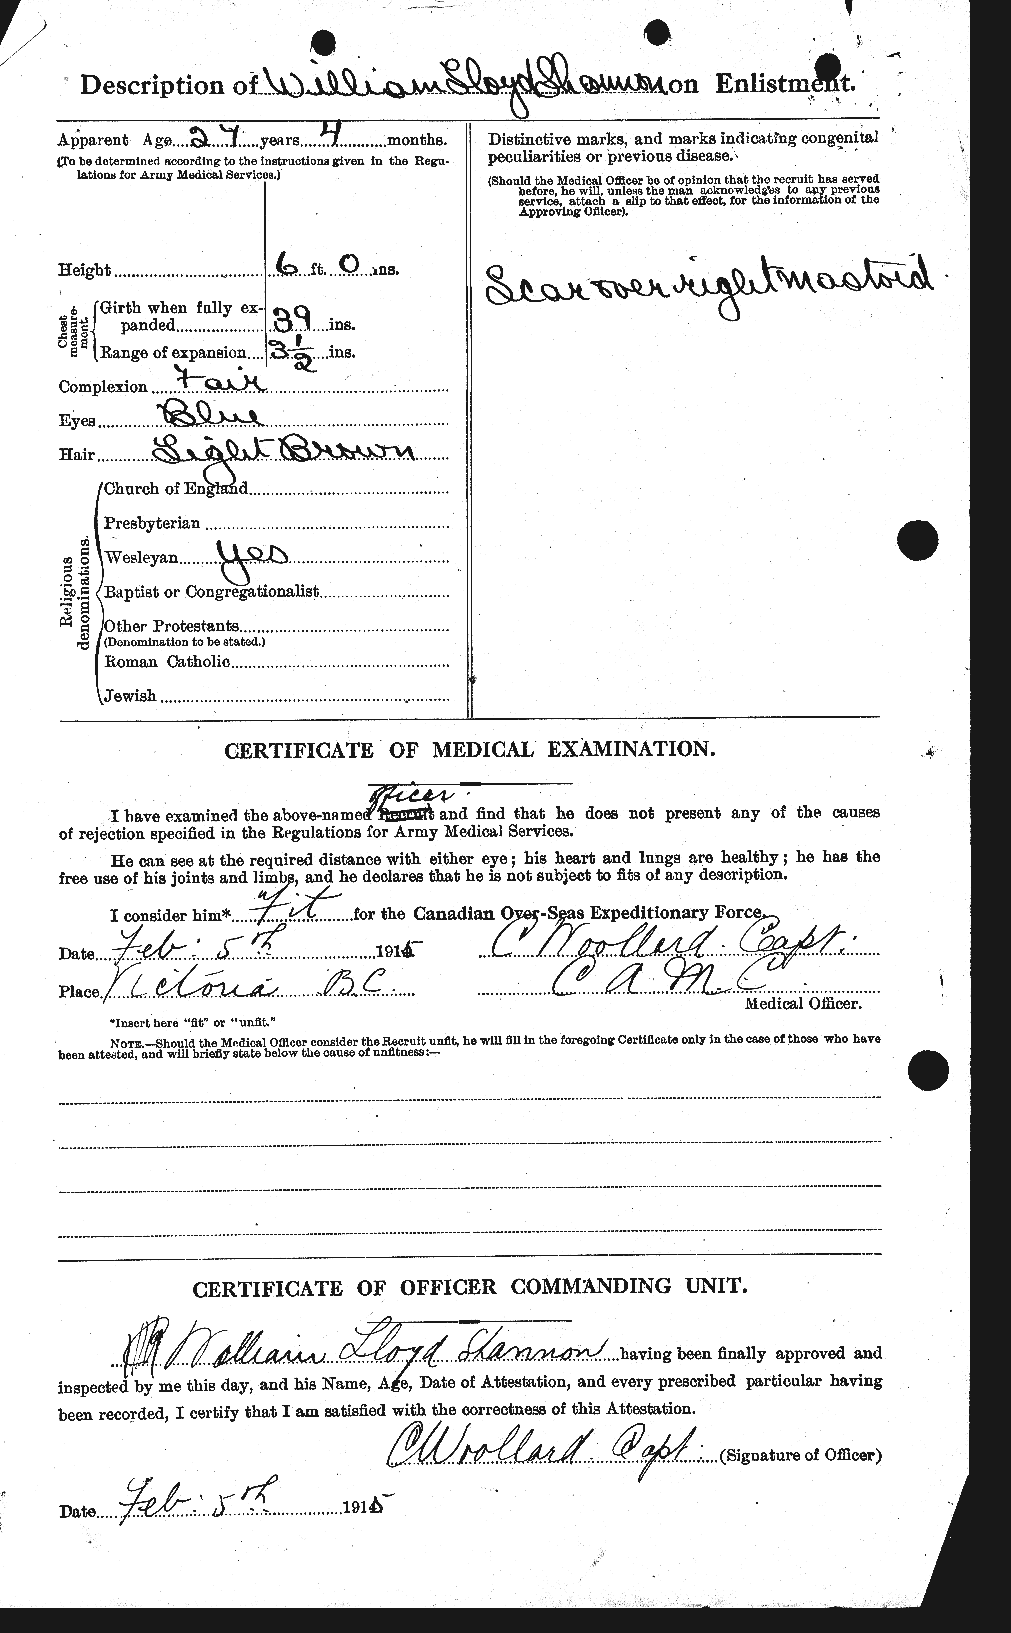 Dossiers du Personnel de la Première Guerre mondiale - CEC 088115b